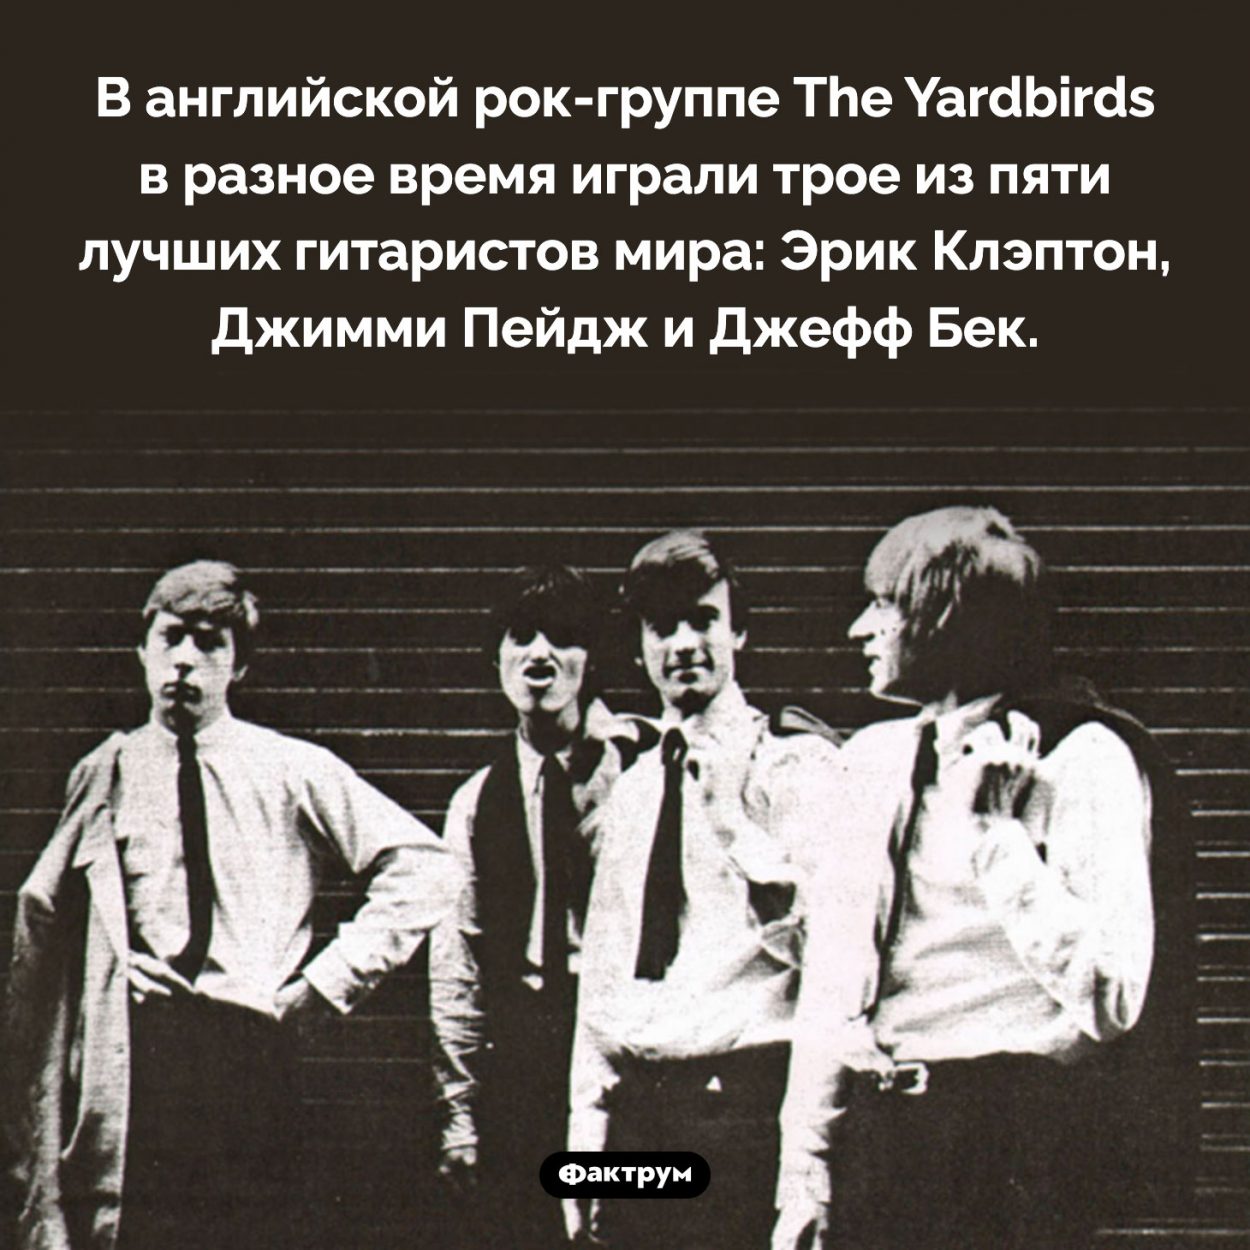 Плодовитая рок-группа. В английской рок-группе The Yardbirds в разное время играли трое из пяти лучших гитаристов мира: Эрик Клэптон, Джимми Пейдж и Джефф Бек.